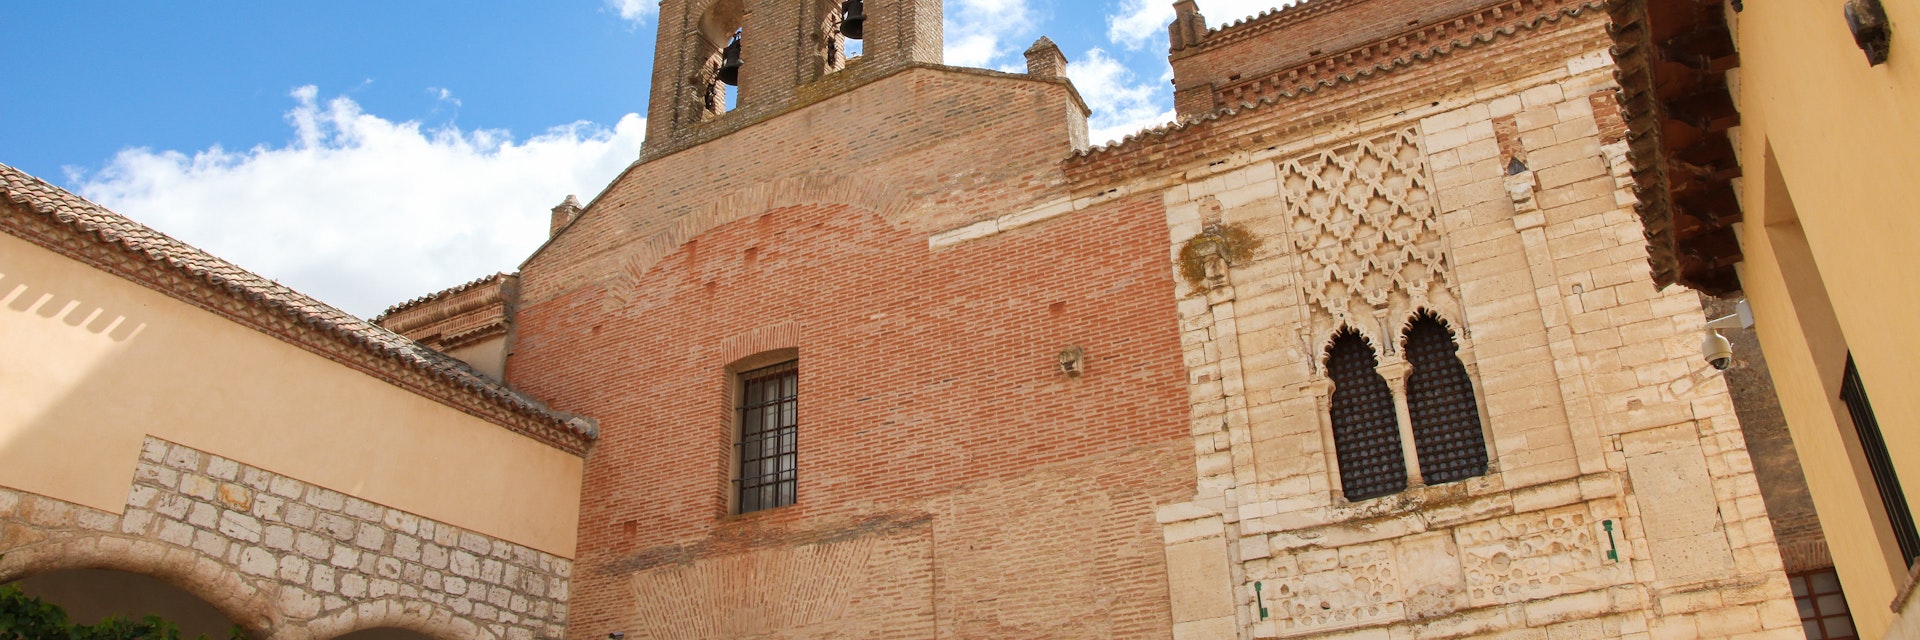 Convent of Santa Clara in Tordesillas.